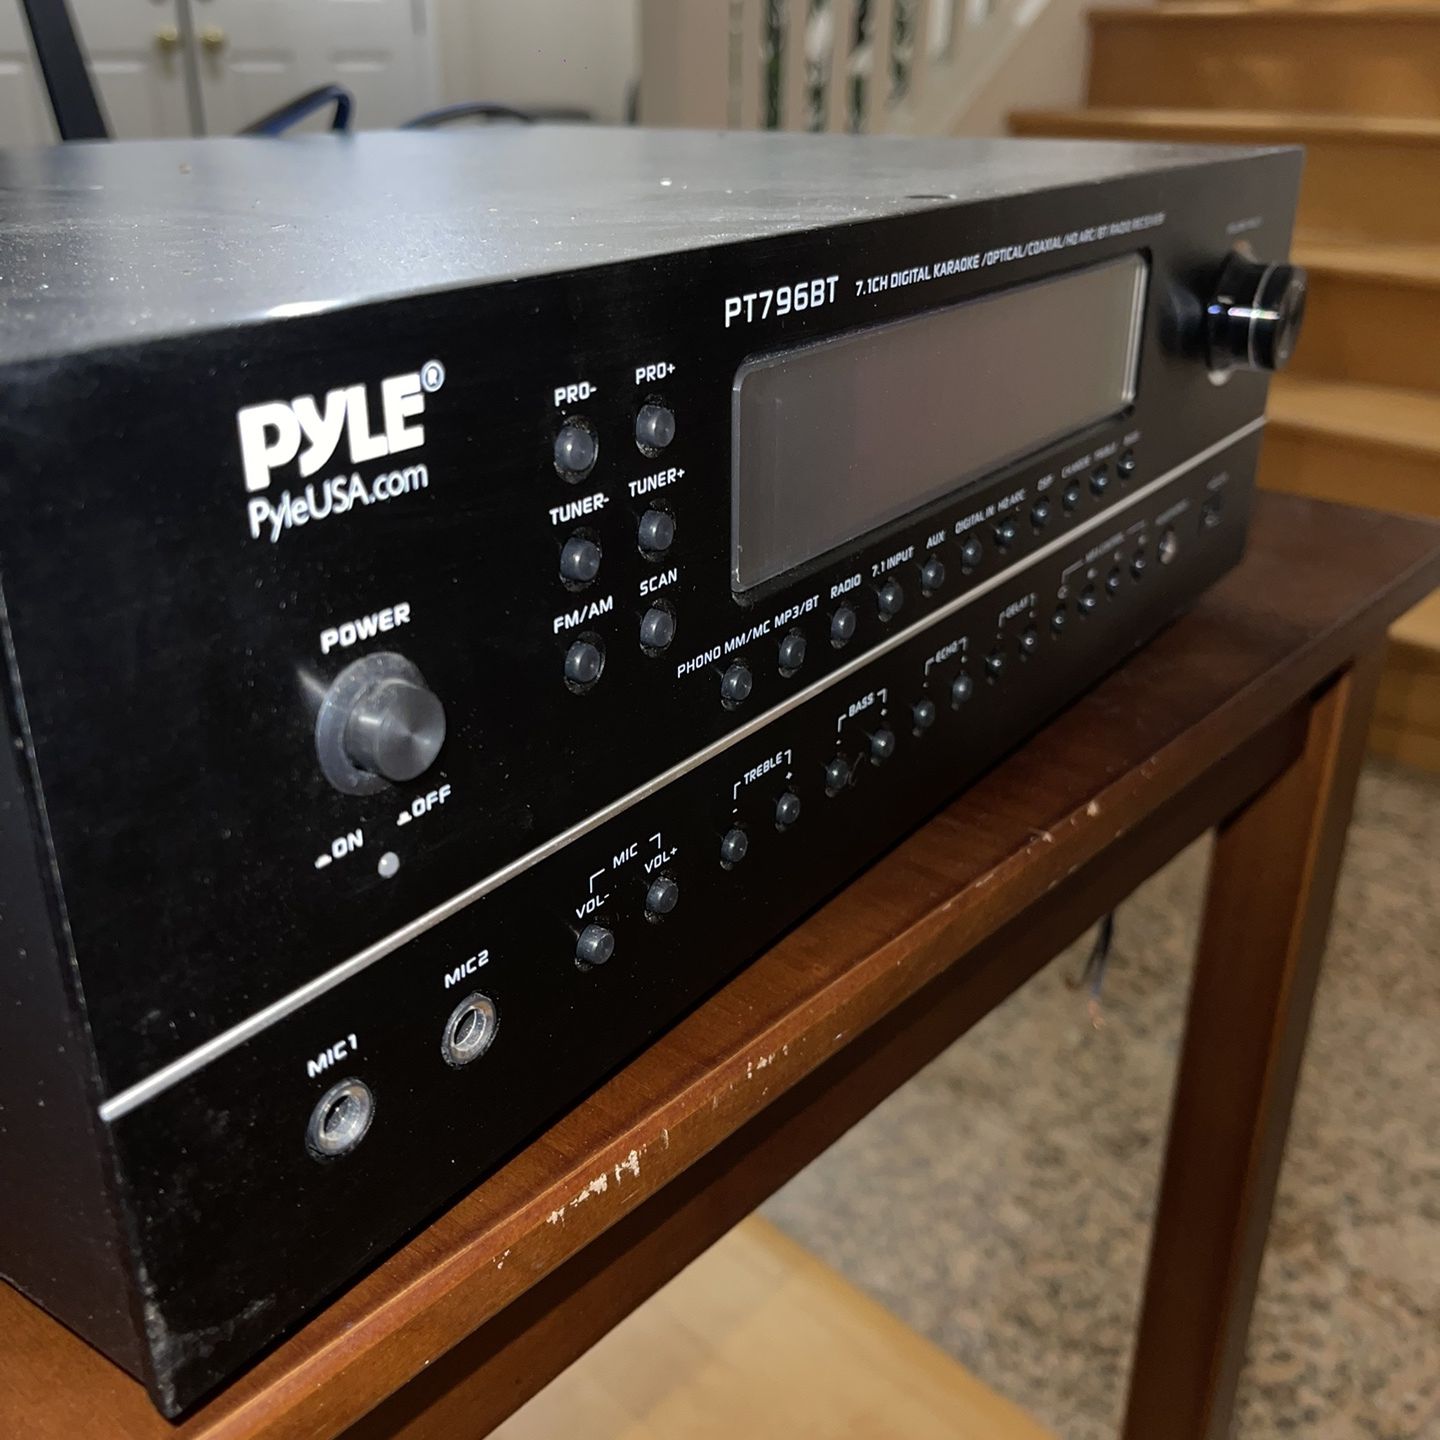 PYLE PT796BT Amplifier 